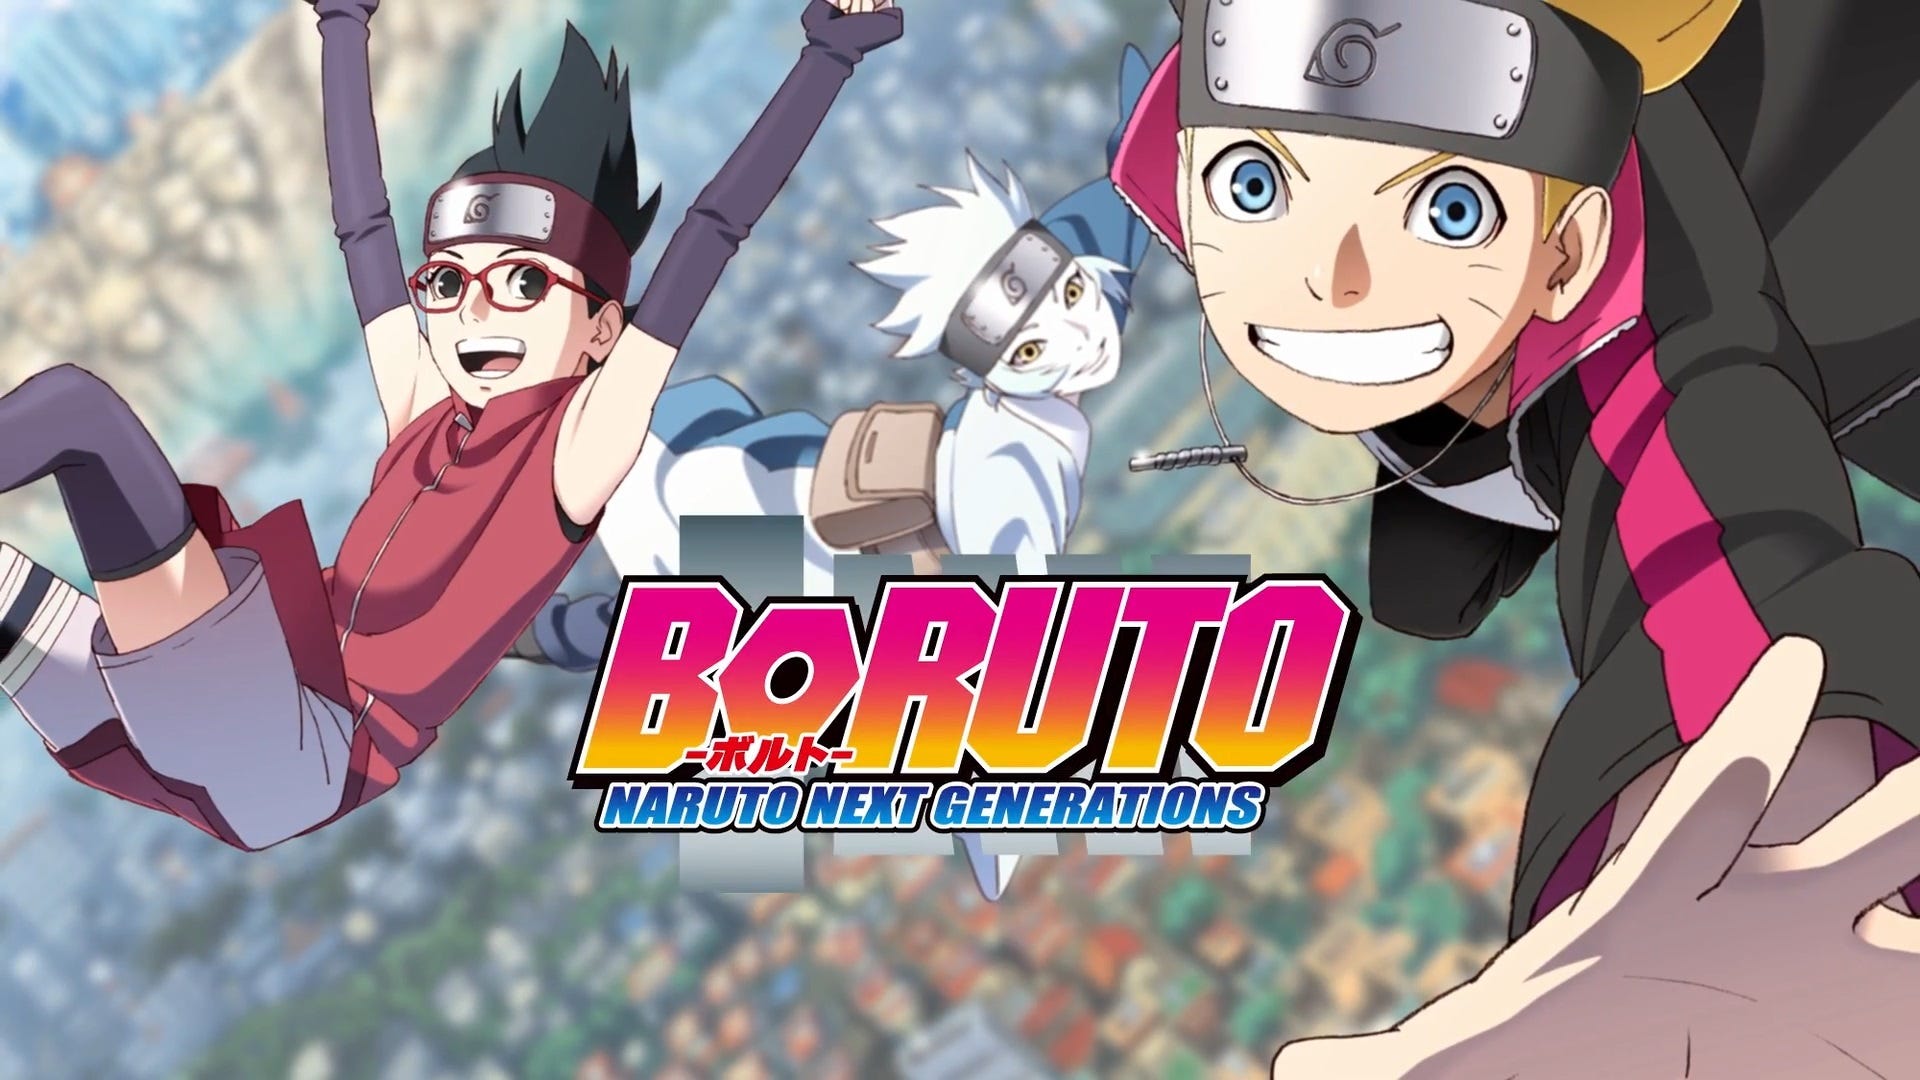  Boruto  Naruto Next  Generation  131 Sub ITA Boruto  